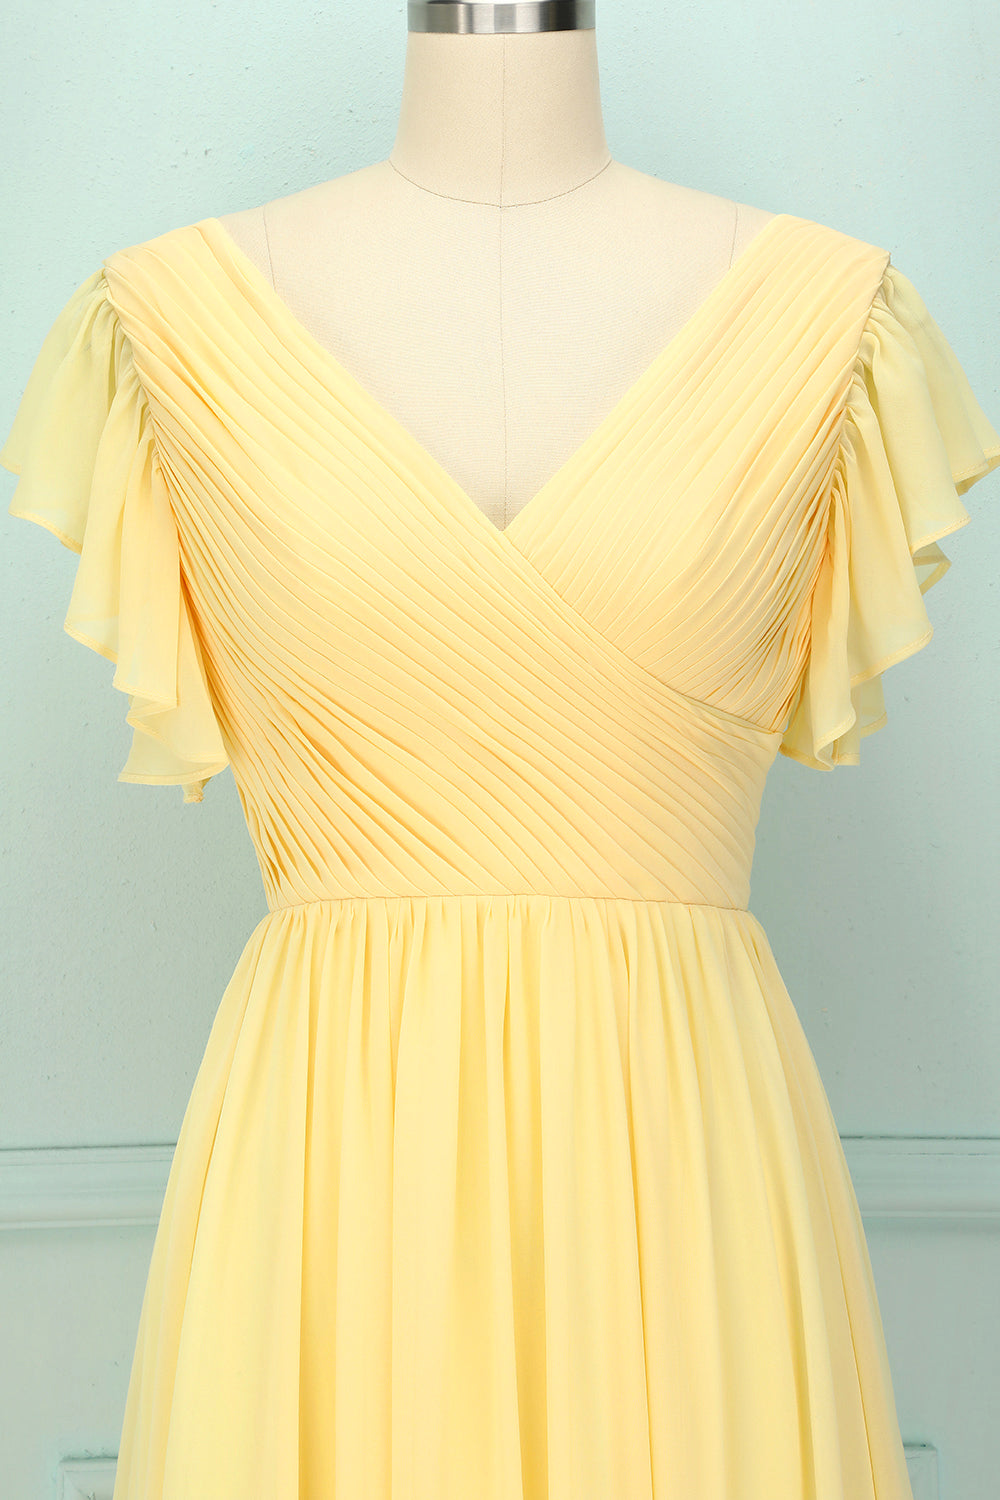 Yellow V-neck Long Bridesmaid Dress